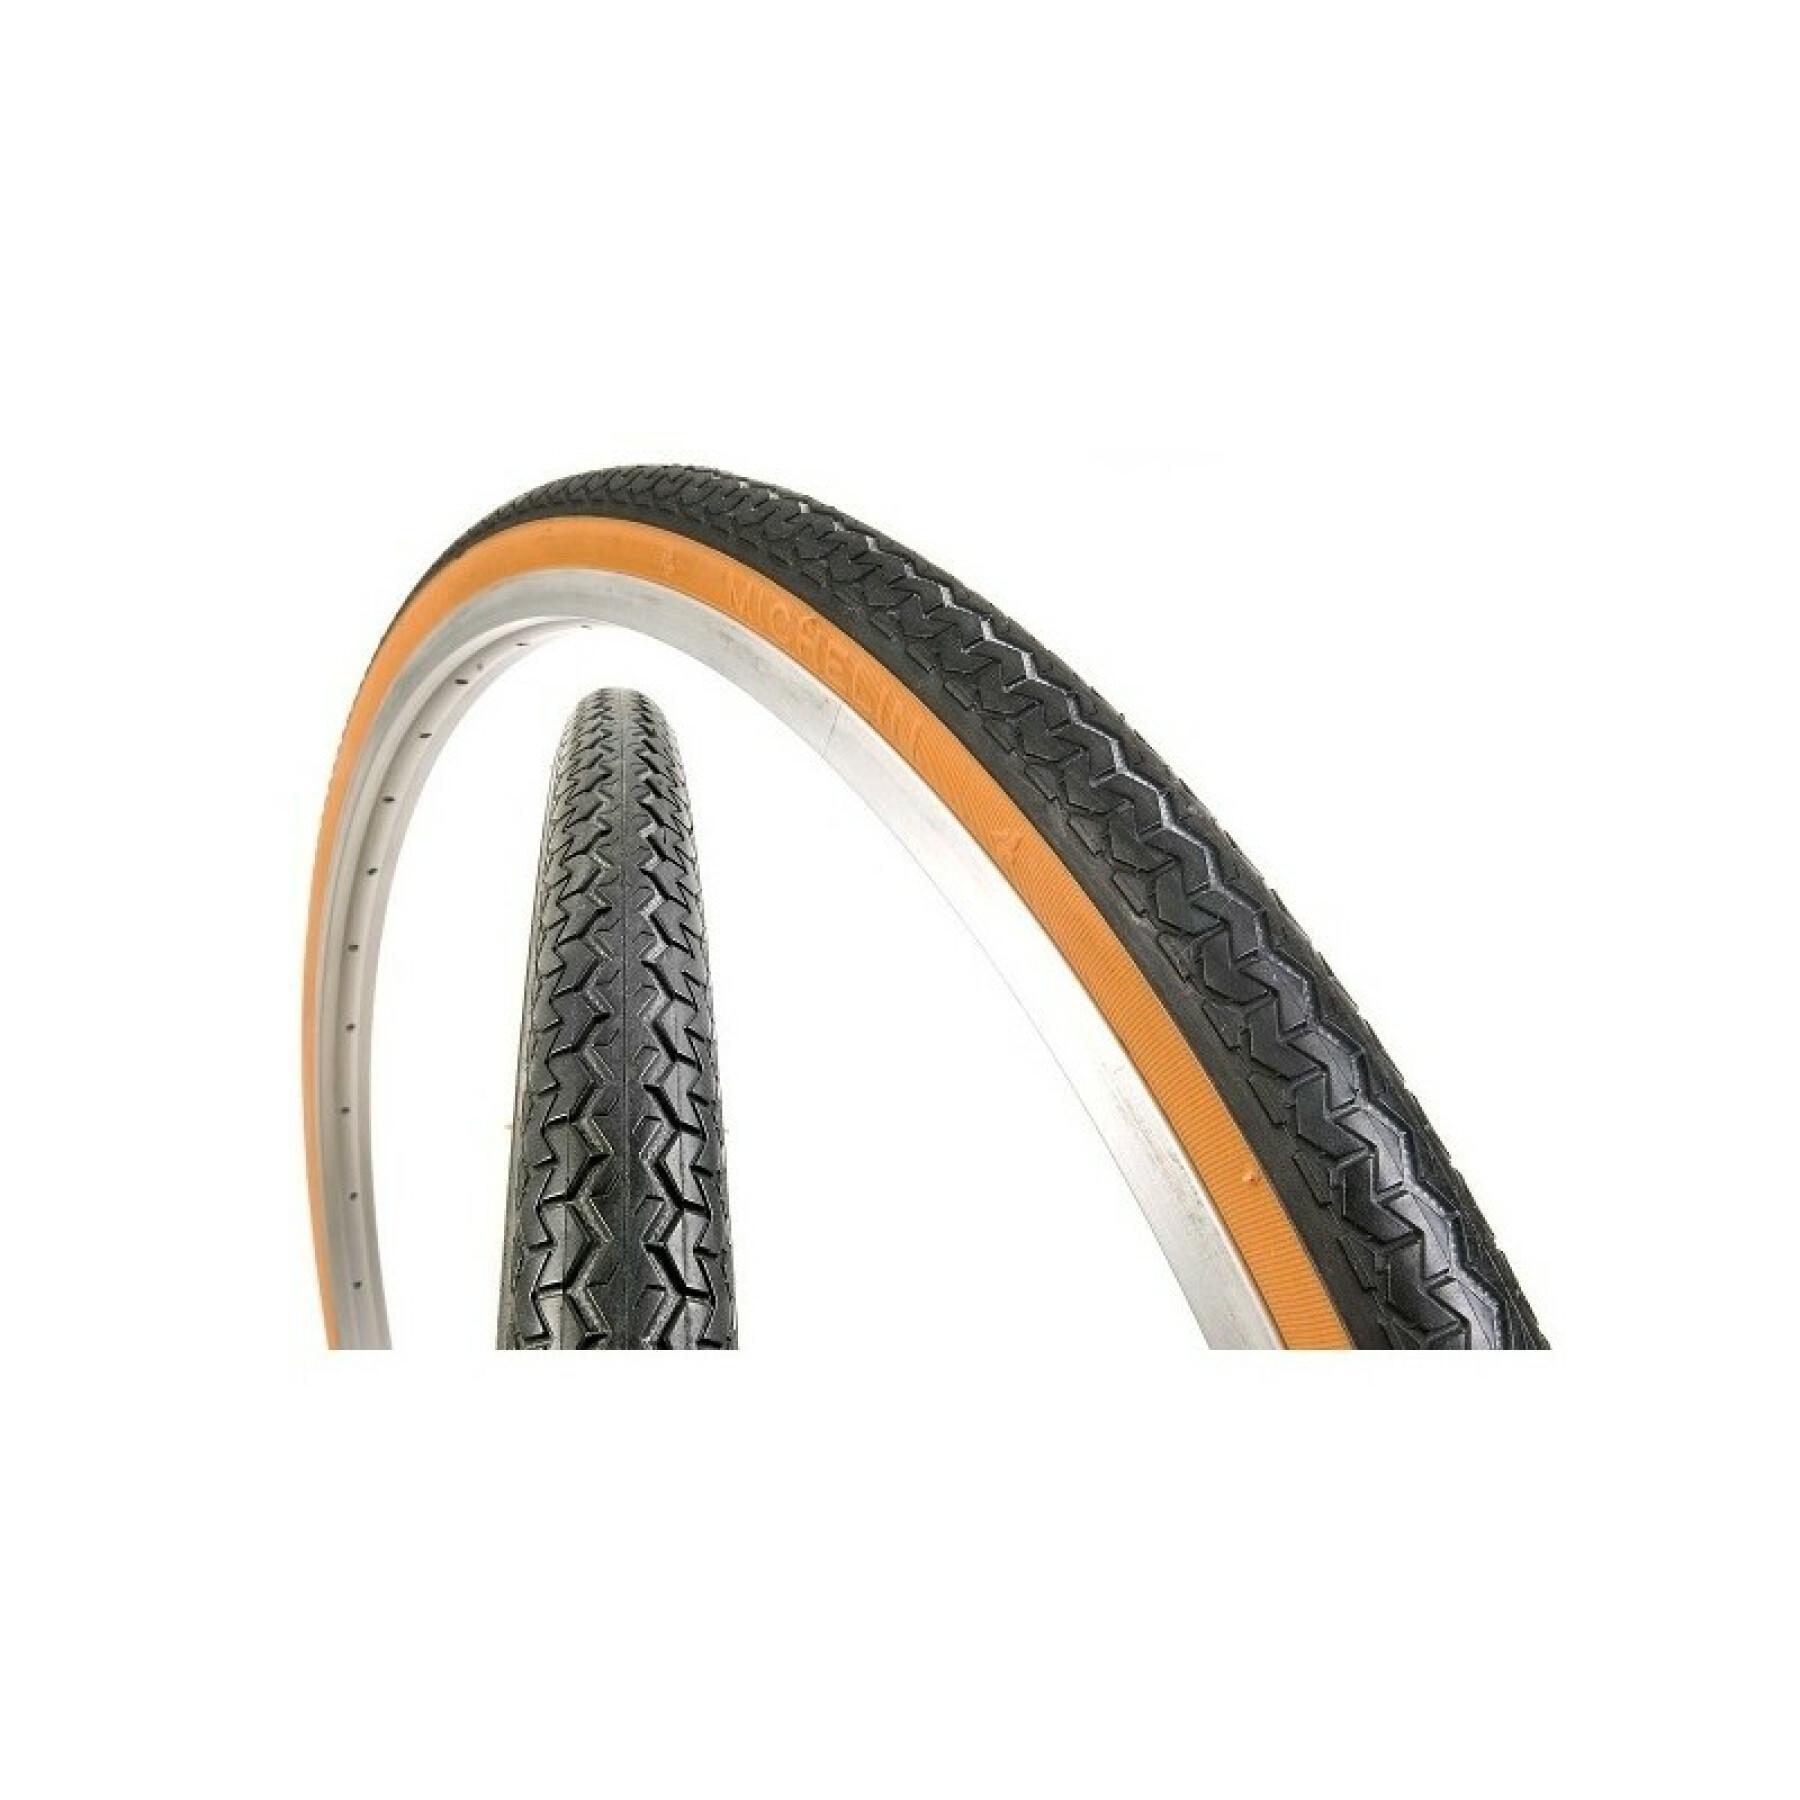 City etrto 44-584 650b sc transworld sprint acesso linha de sprint rígido pneu Michelin